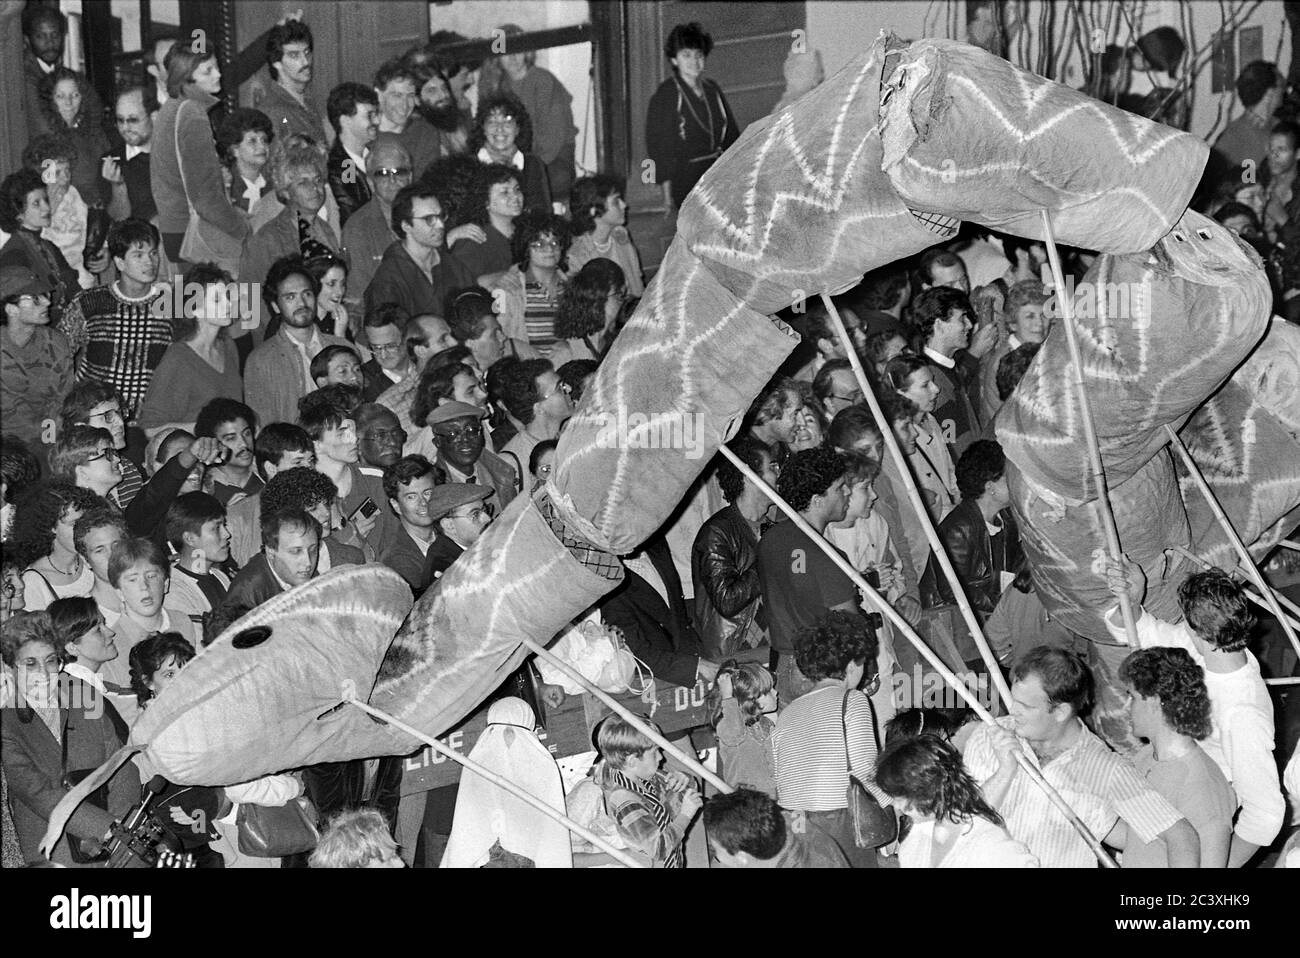 Un gigantesco burattino di serpenti alla Greenwich Village Halloween Parade, New York City, USA negli anni '80 fotografato con film in bianco e nero di notte. Foto Stock